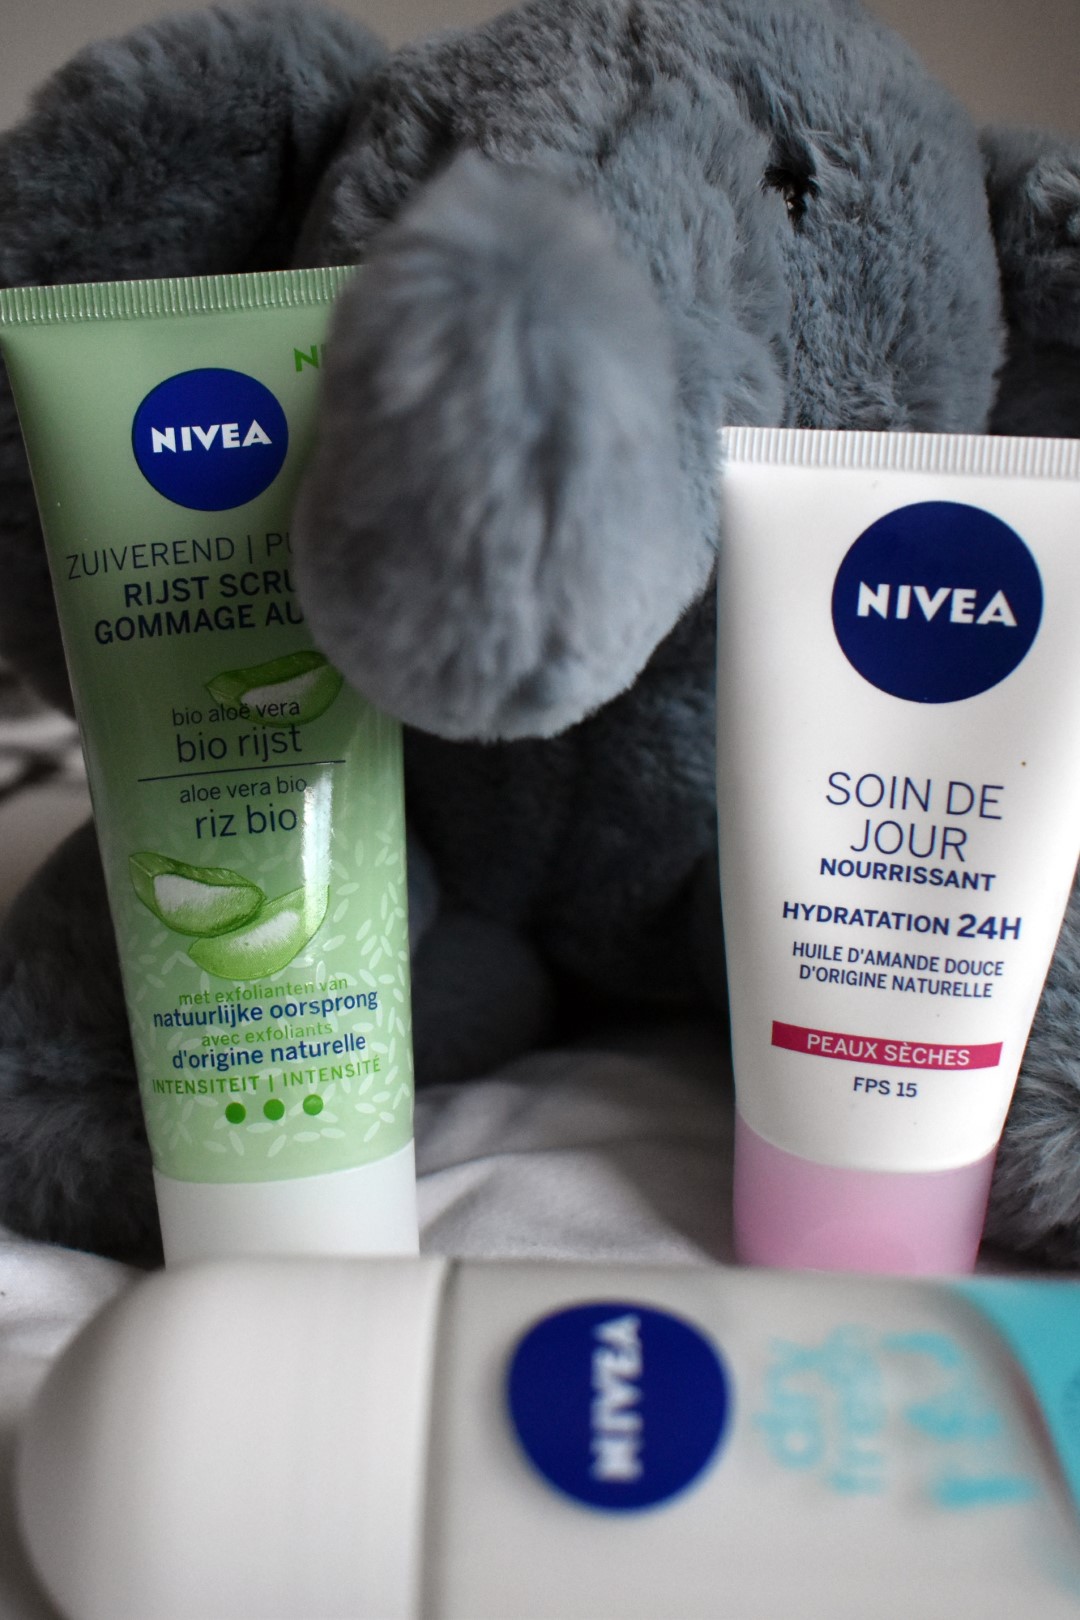 Nivéa face scrub and face cream